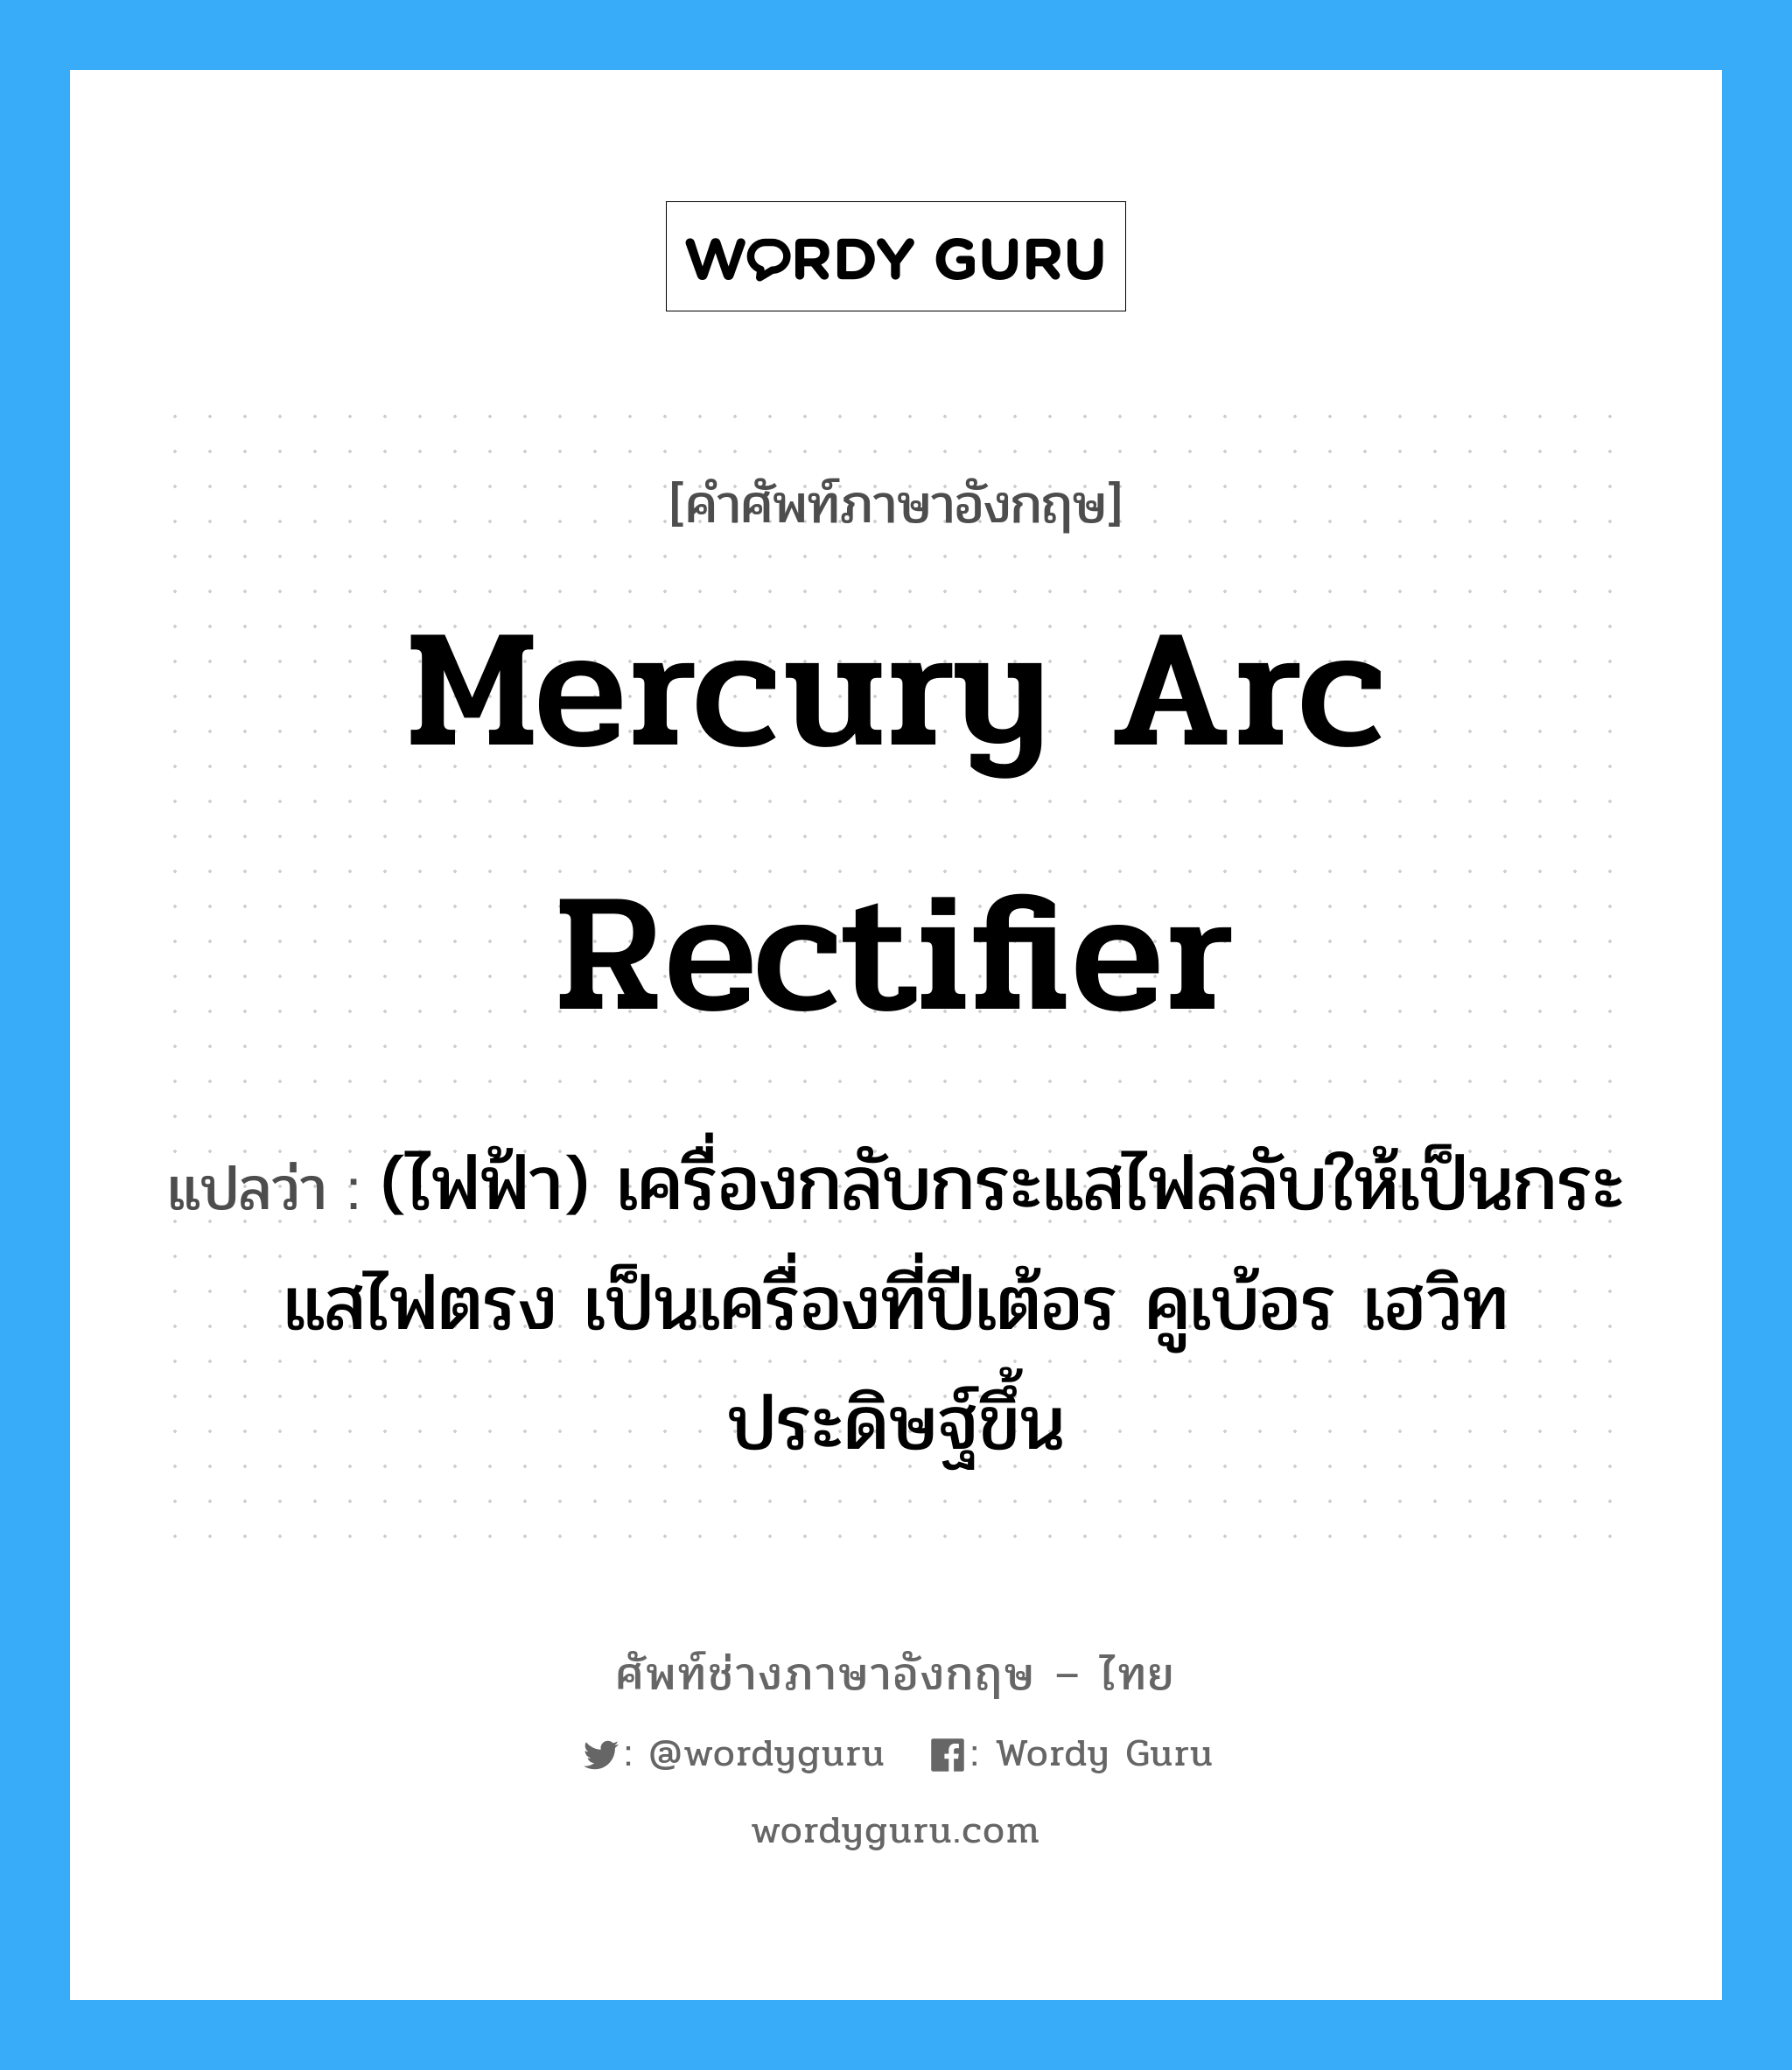 mercury arc rectifier แปลว่า?, คำศัพท์ช่างภาษาอังกฤษ - ไทย mercury arc rectifier คำศัพท์ภาษาอังกฤษ mercury arc rectifier แปลว่า (ไฟฟ้า) เครื่องกลับกระแสไฟสลับให้เป็นกระแสไฟตรง เป็นเครื่องที่ปีเต้อร คูเบ้อร เฮวิท ประดิษฐ์ขึ้น